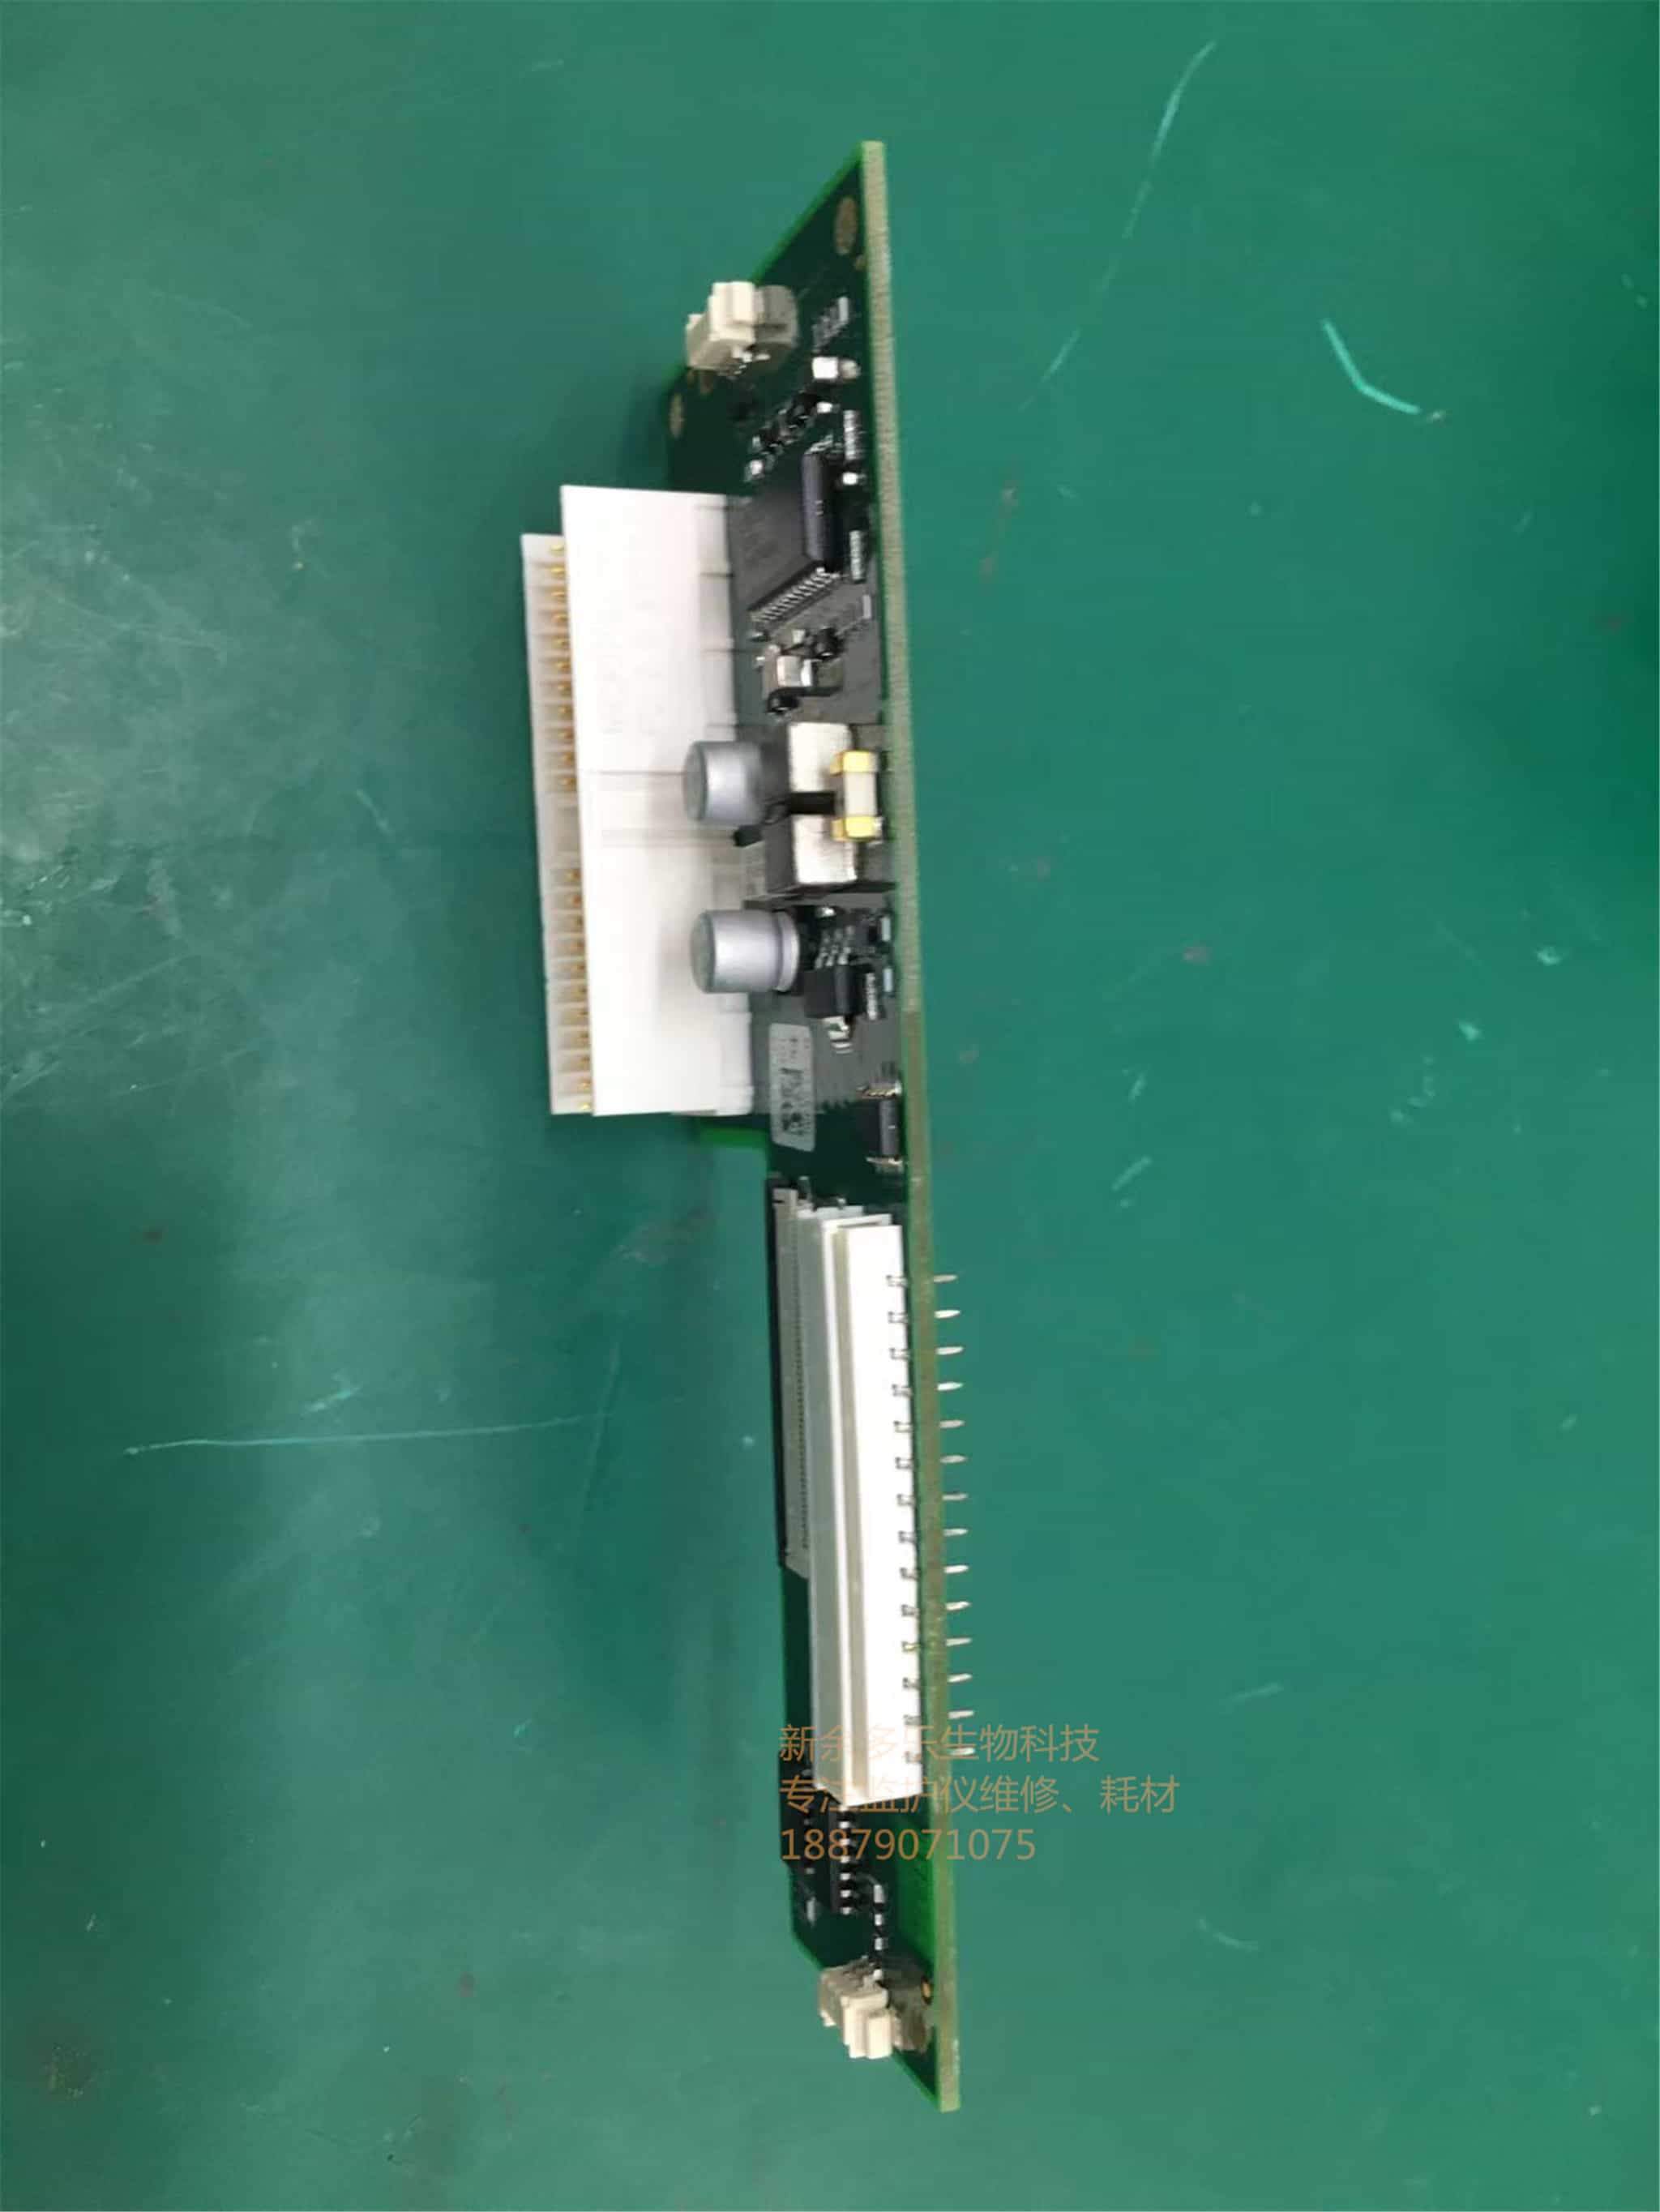 飞利浦 FM20 胎儿监护仪转接板 PN M2703-66430 jpg